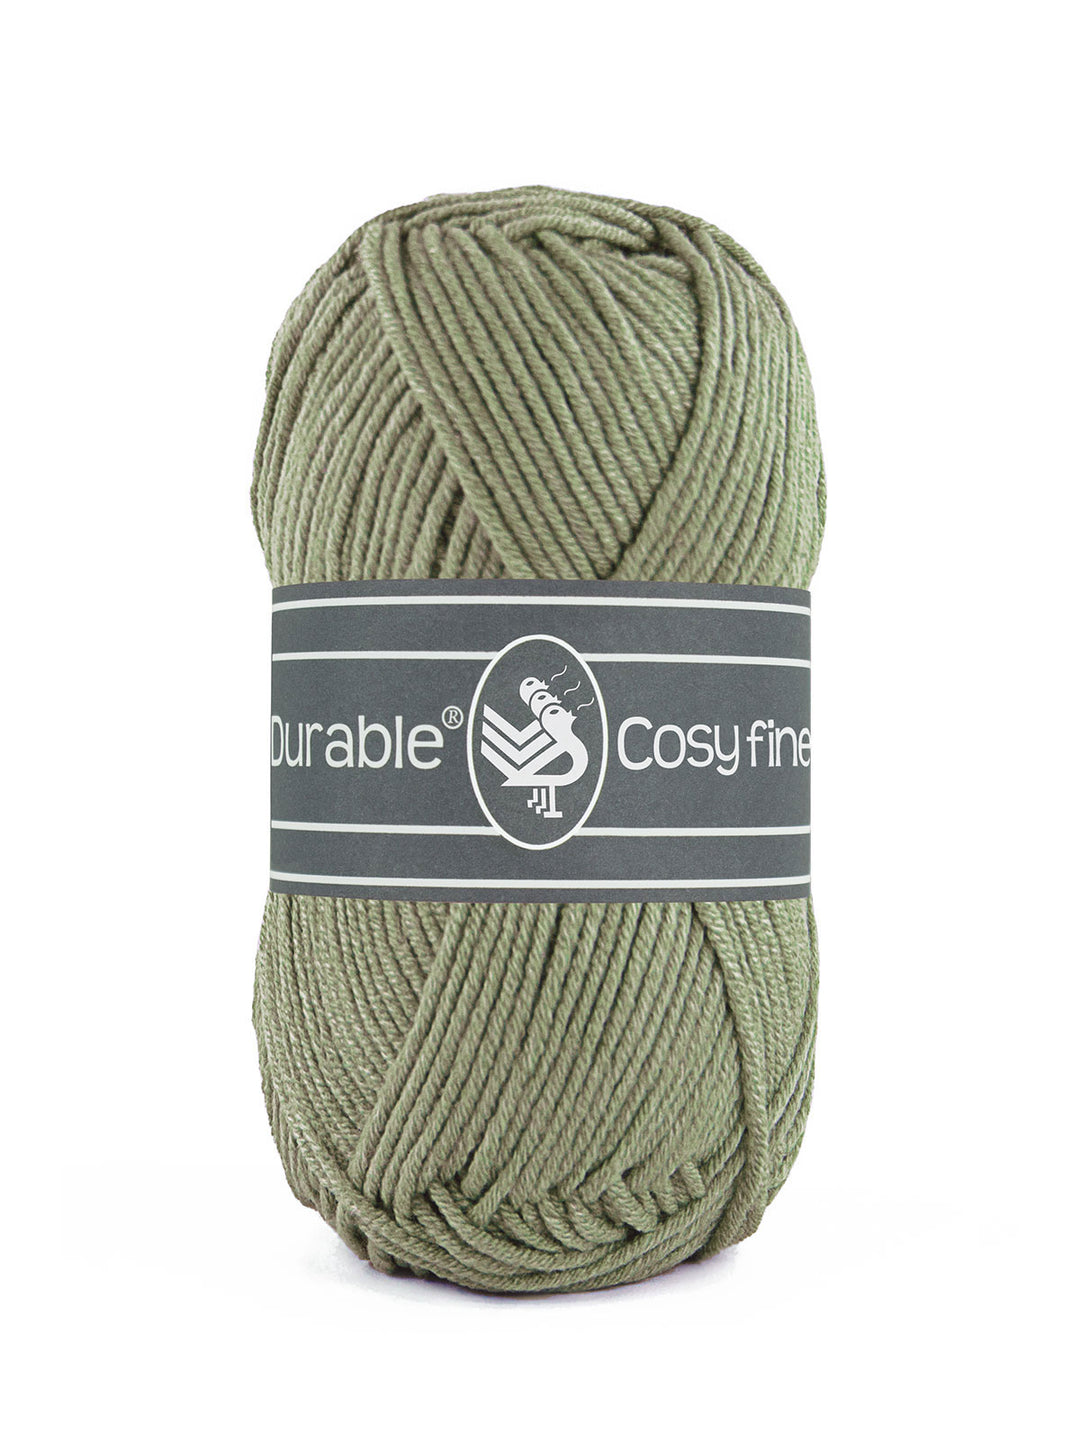 Durable Cosy Fine 402 Seagrass